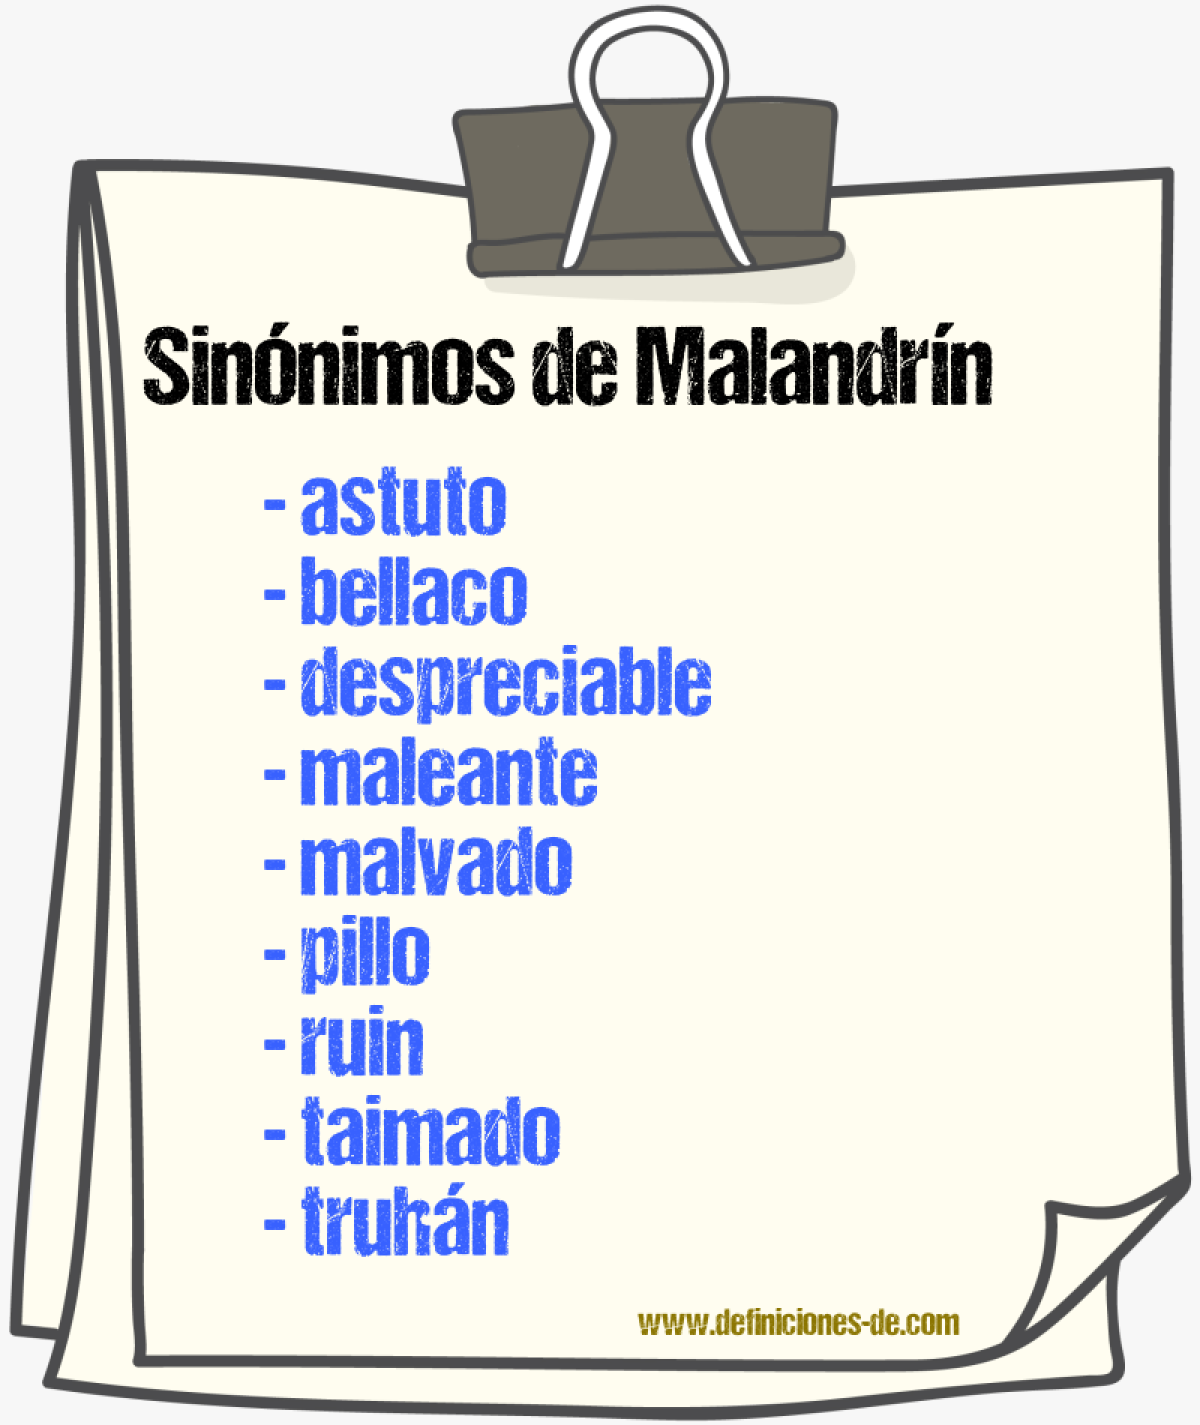 Sinónimos de malandrín